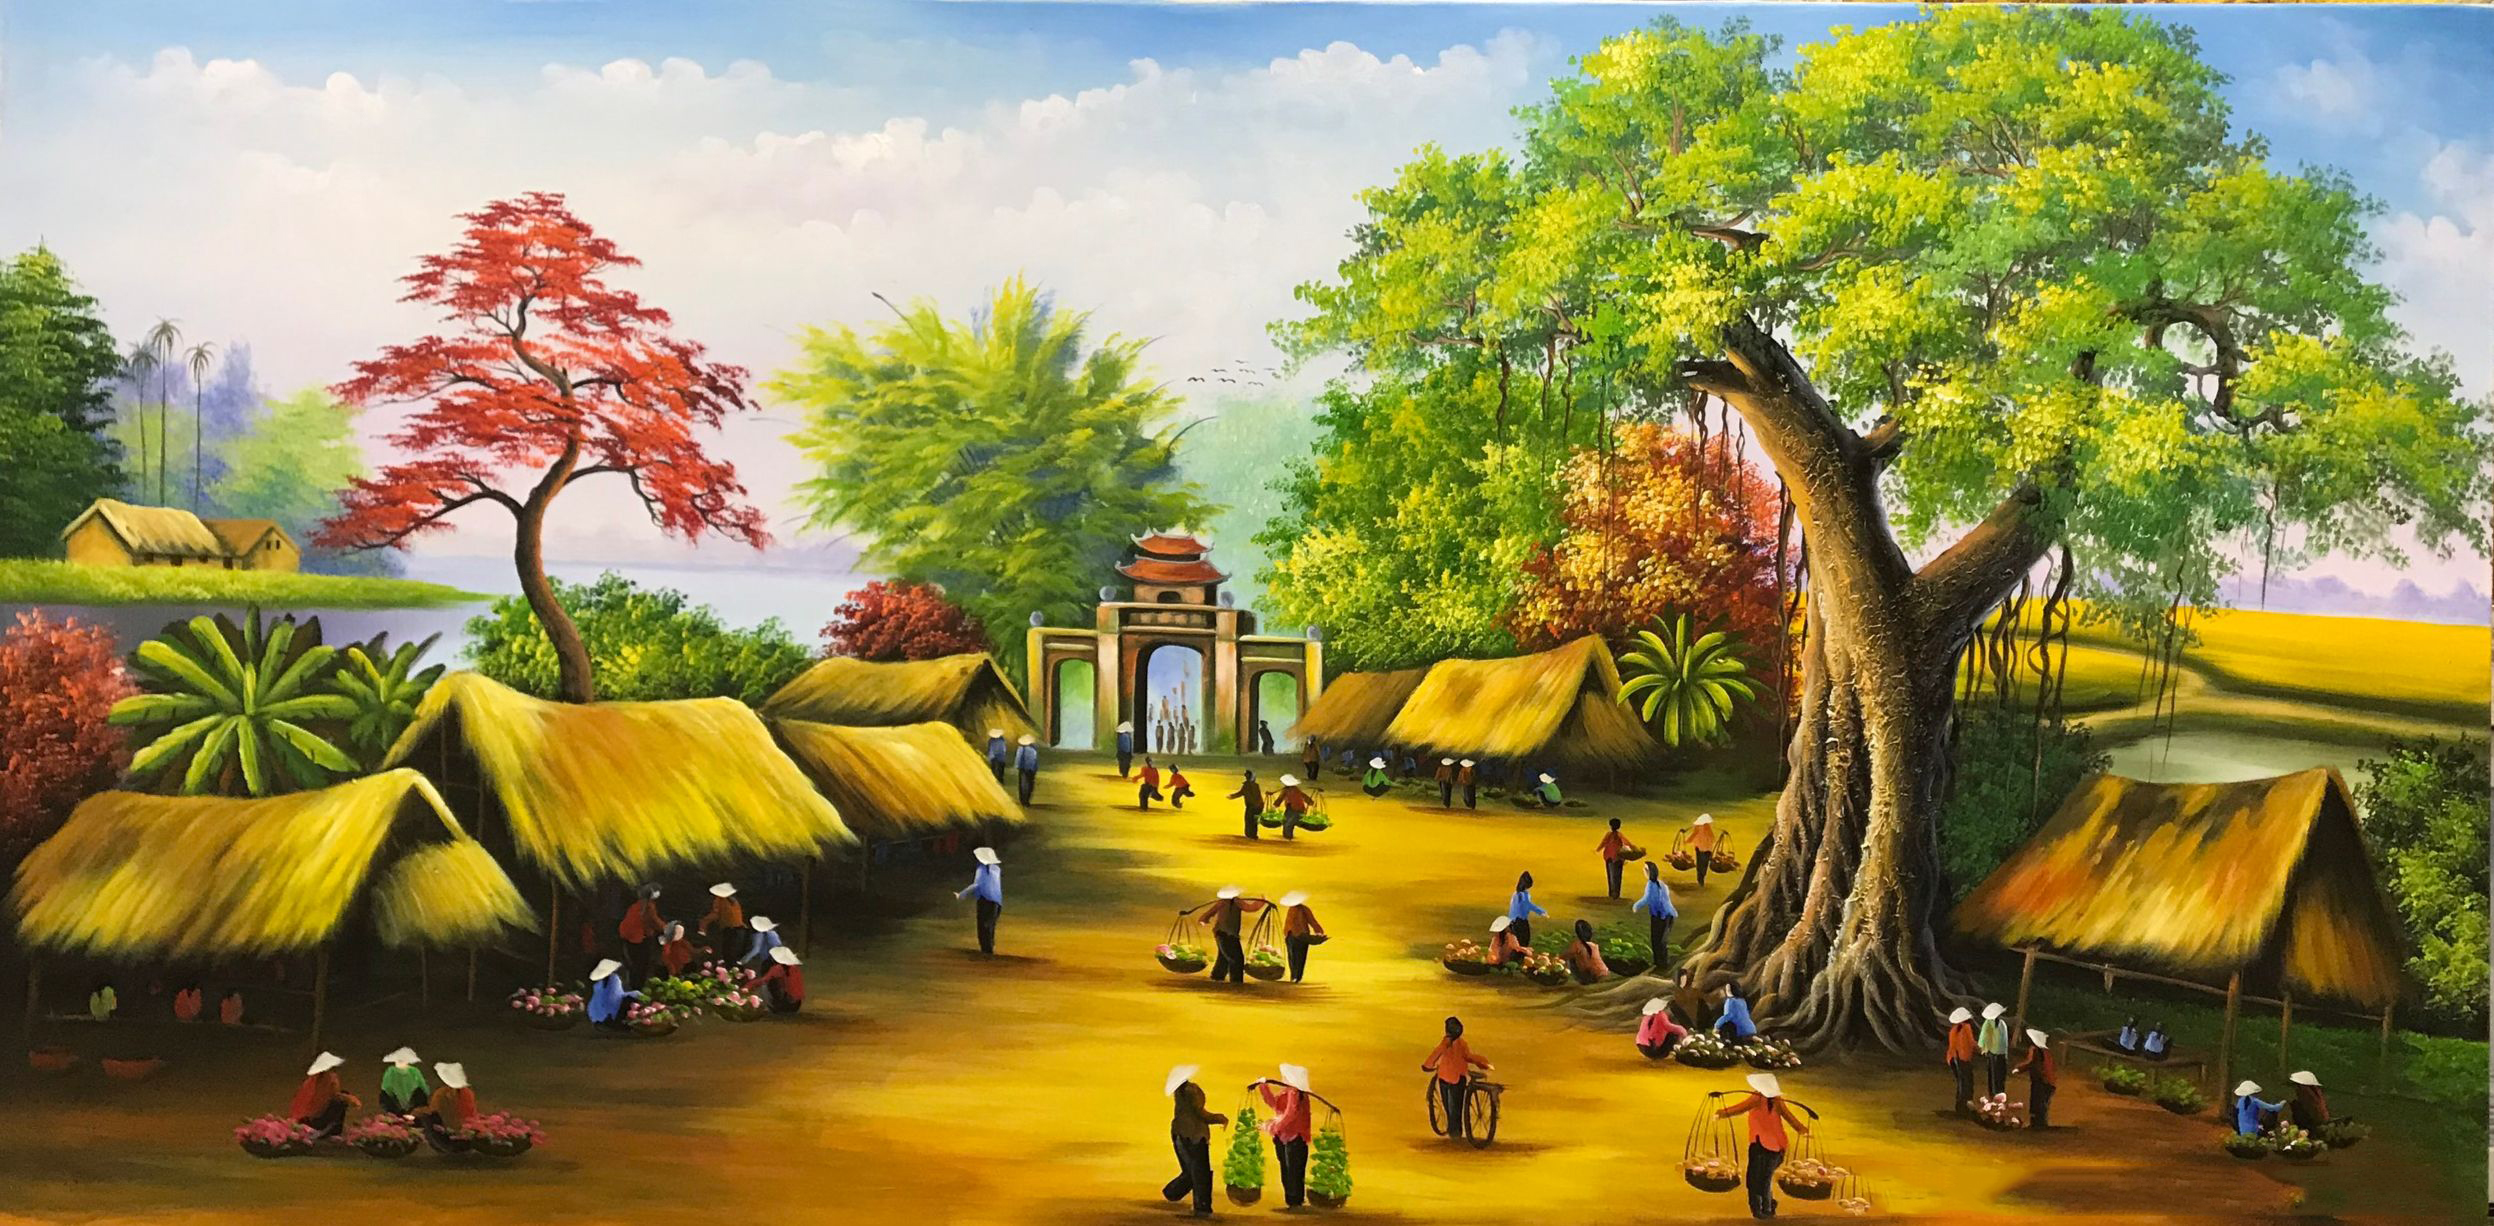 Hình ảnh tranh phong cảnh làng quê dễ vẽ